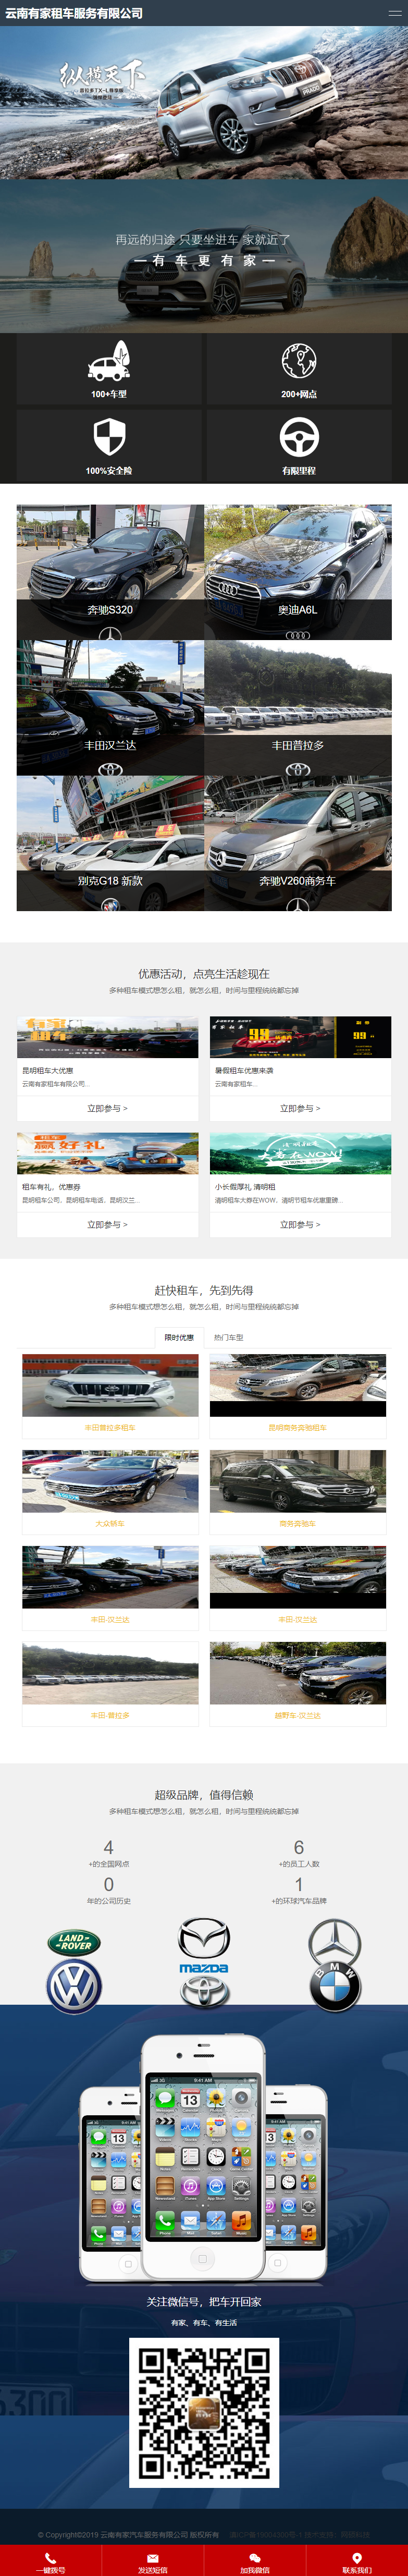 云南有家汽车服务有限公司网站案例